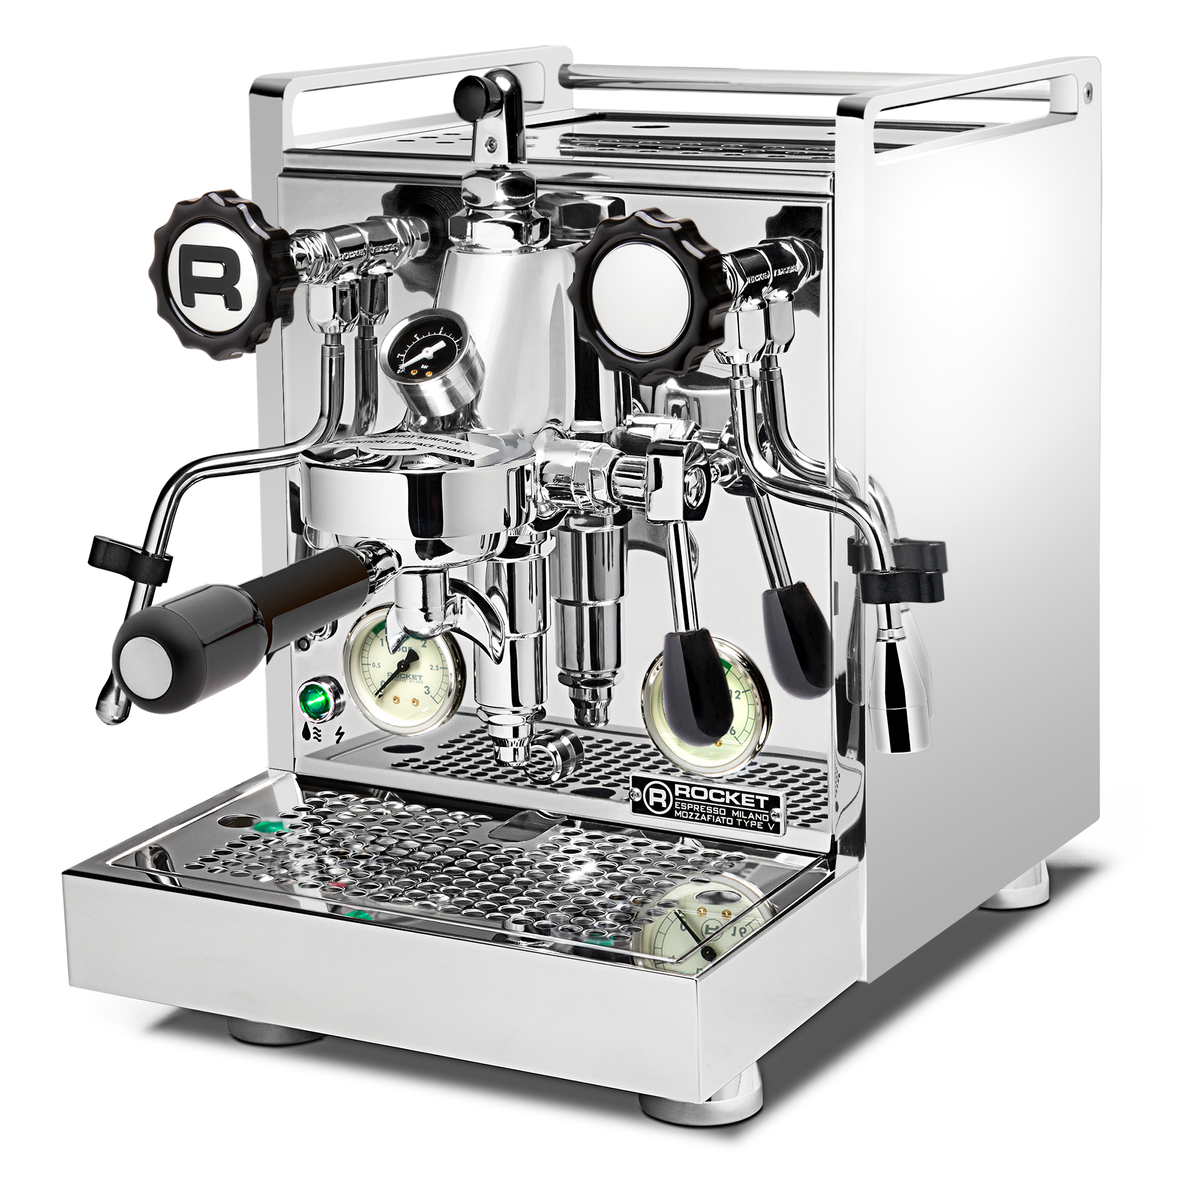 Rocket Espresso Mozzafiato Cronometro V Espresso Machine with Flow Con